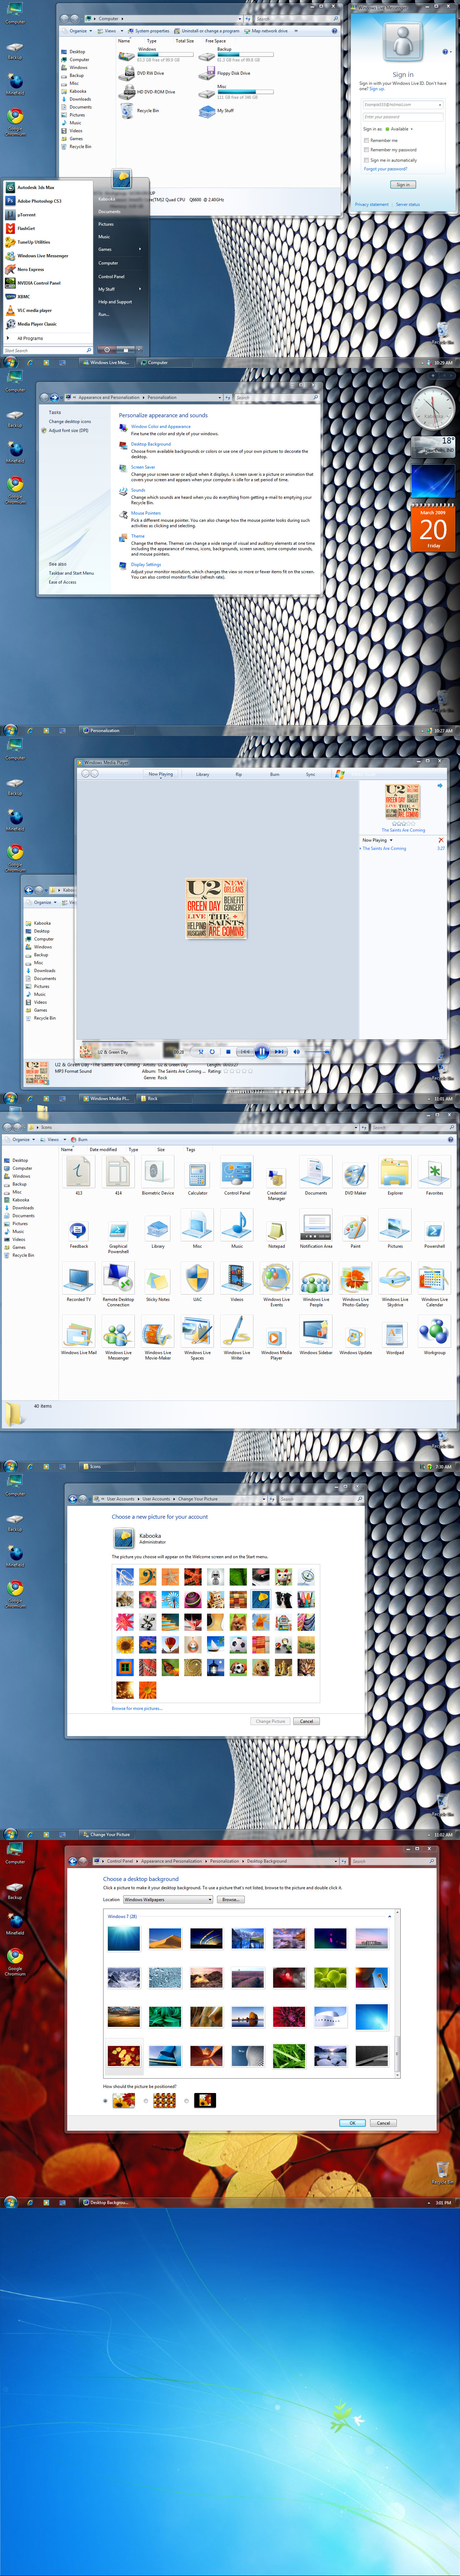 Windows 7 AIO Essentials Pack